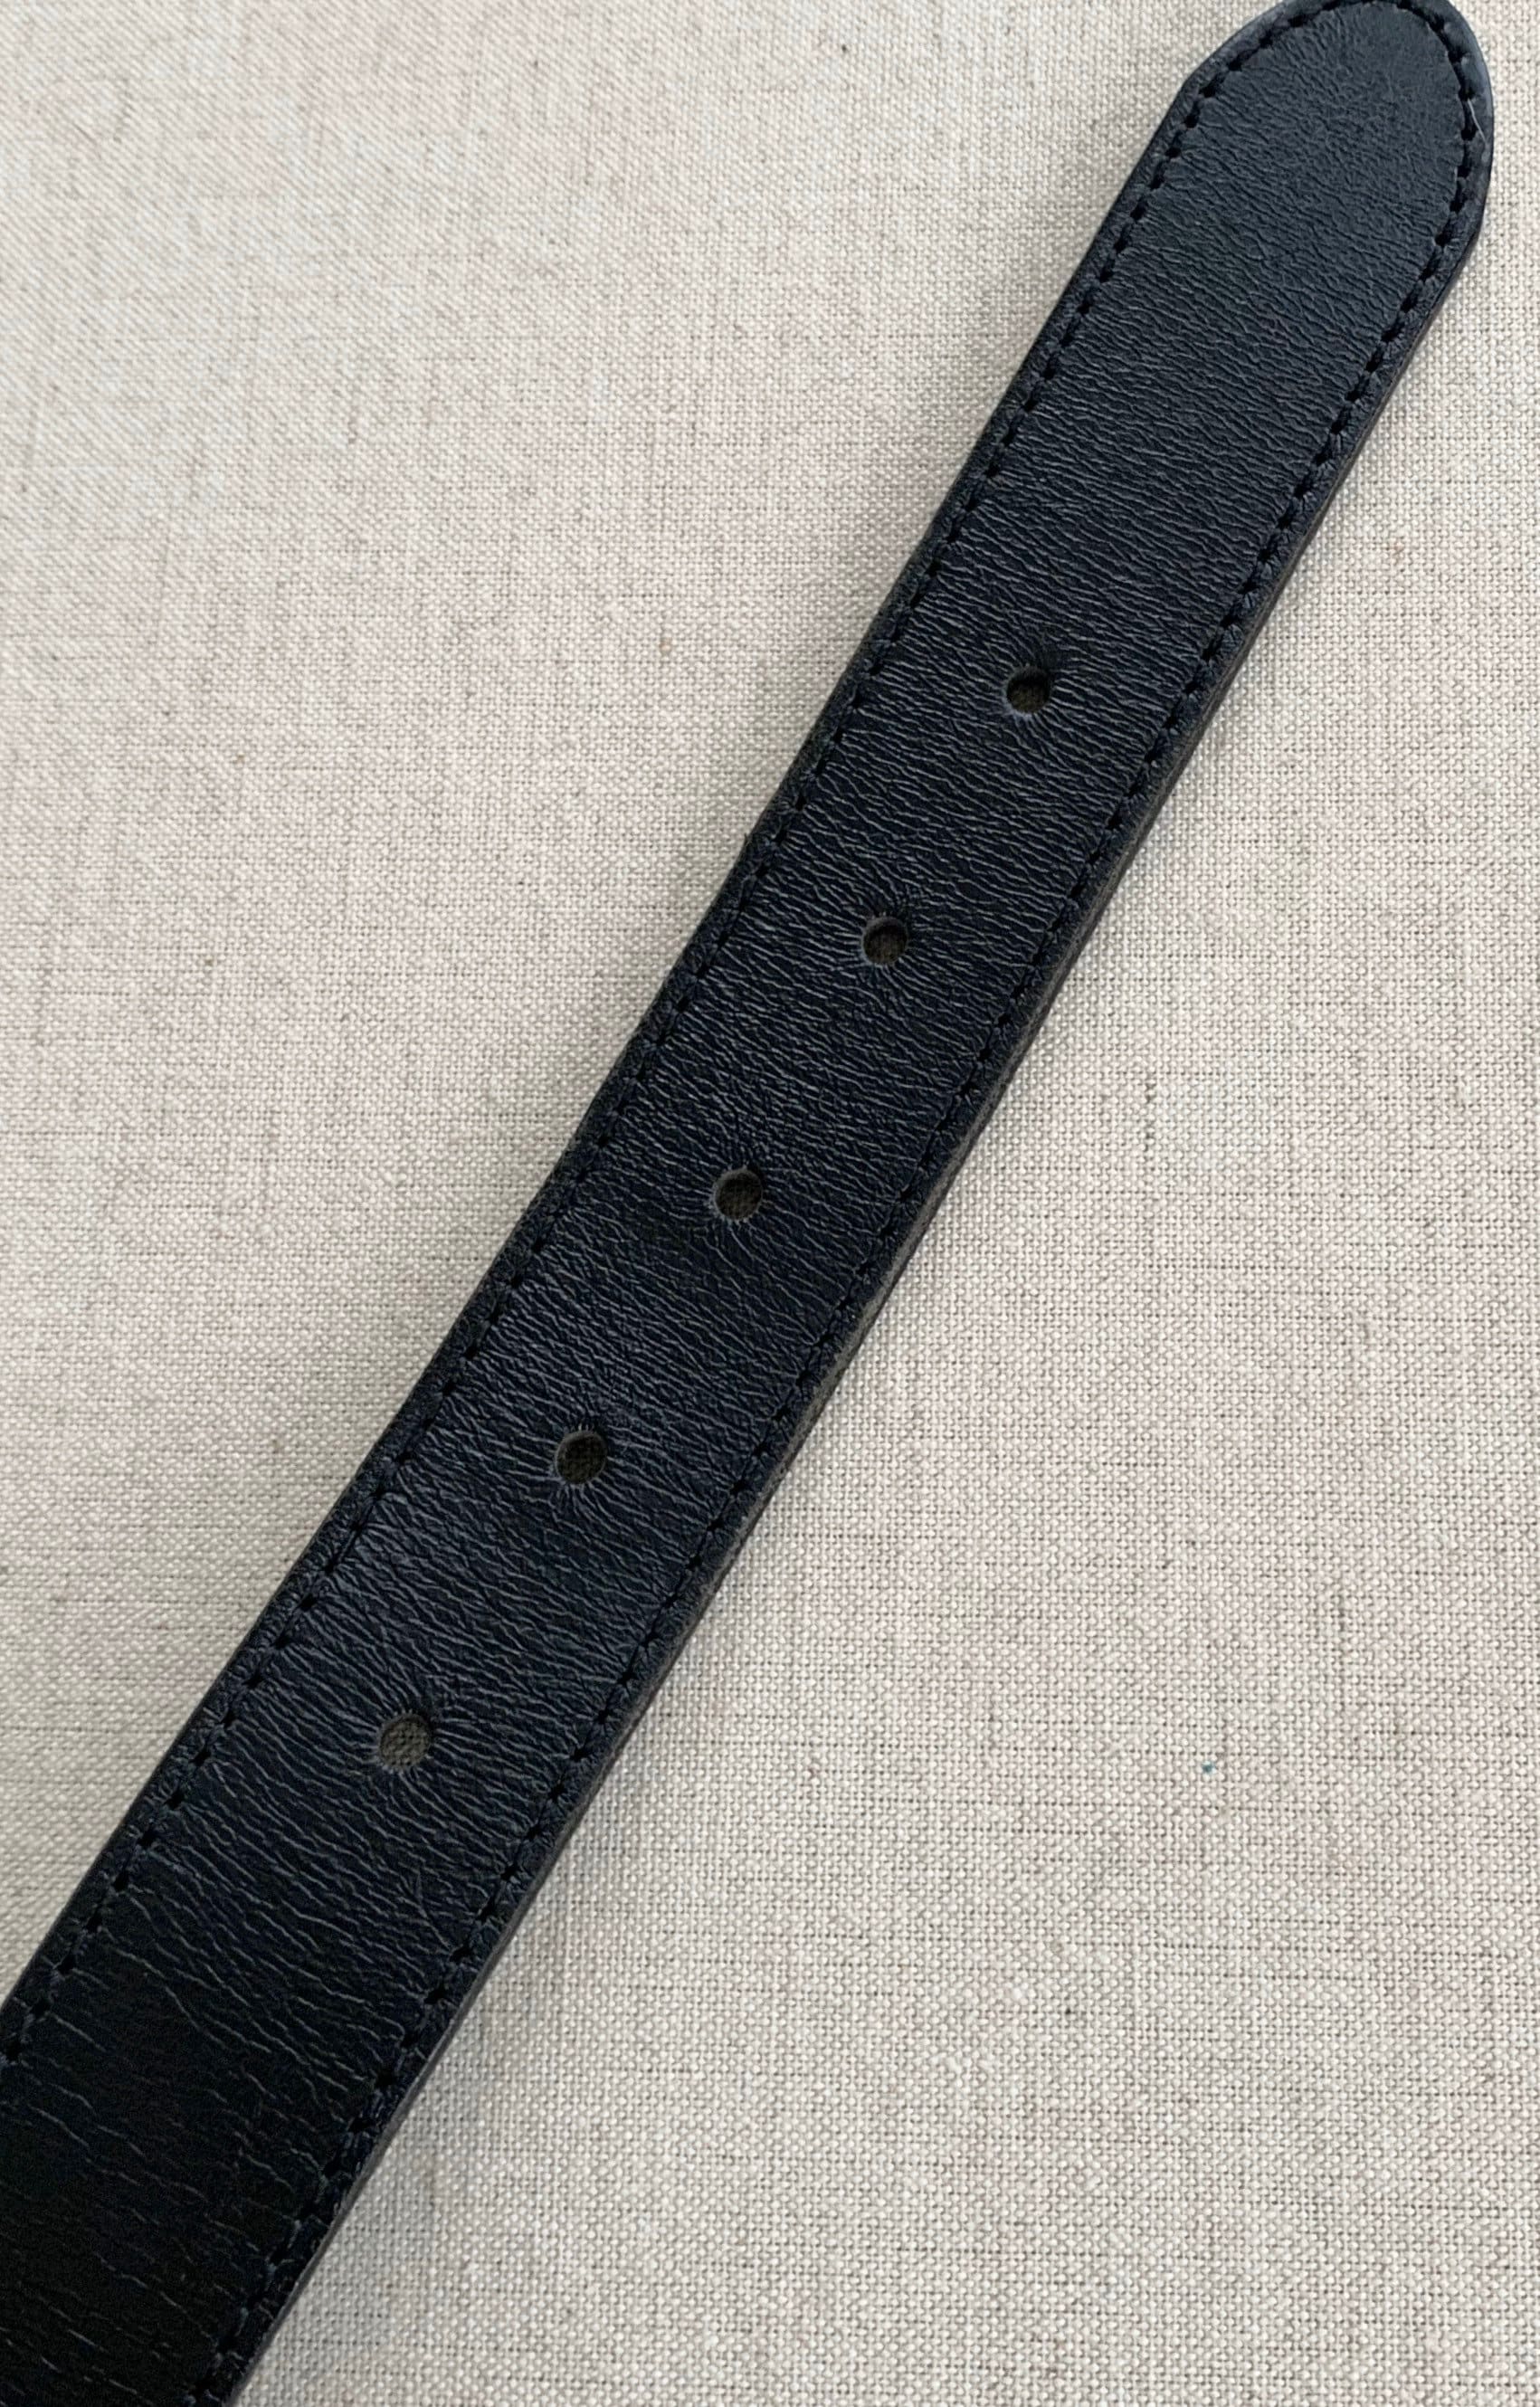 Etienne Aigner Belt Black Leather Vintage Leather Goods Women's Belts ...